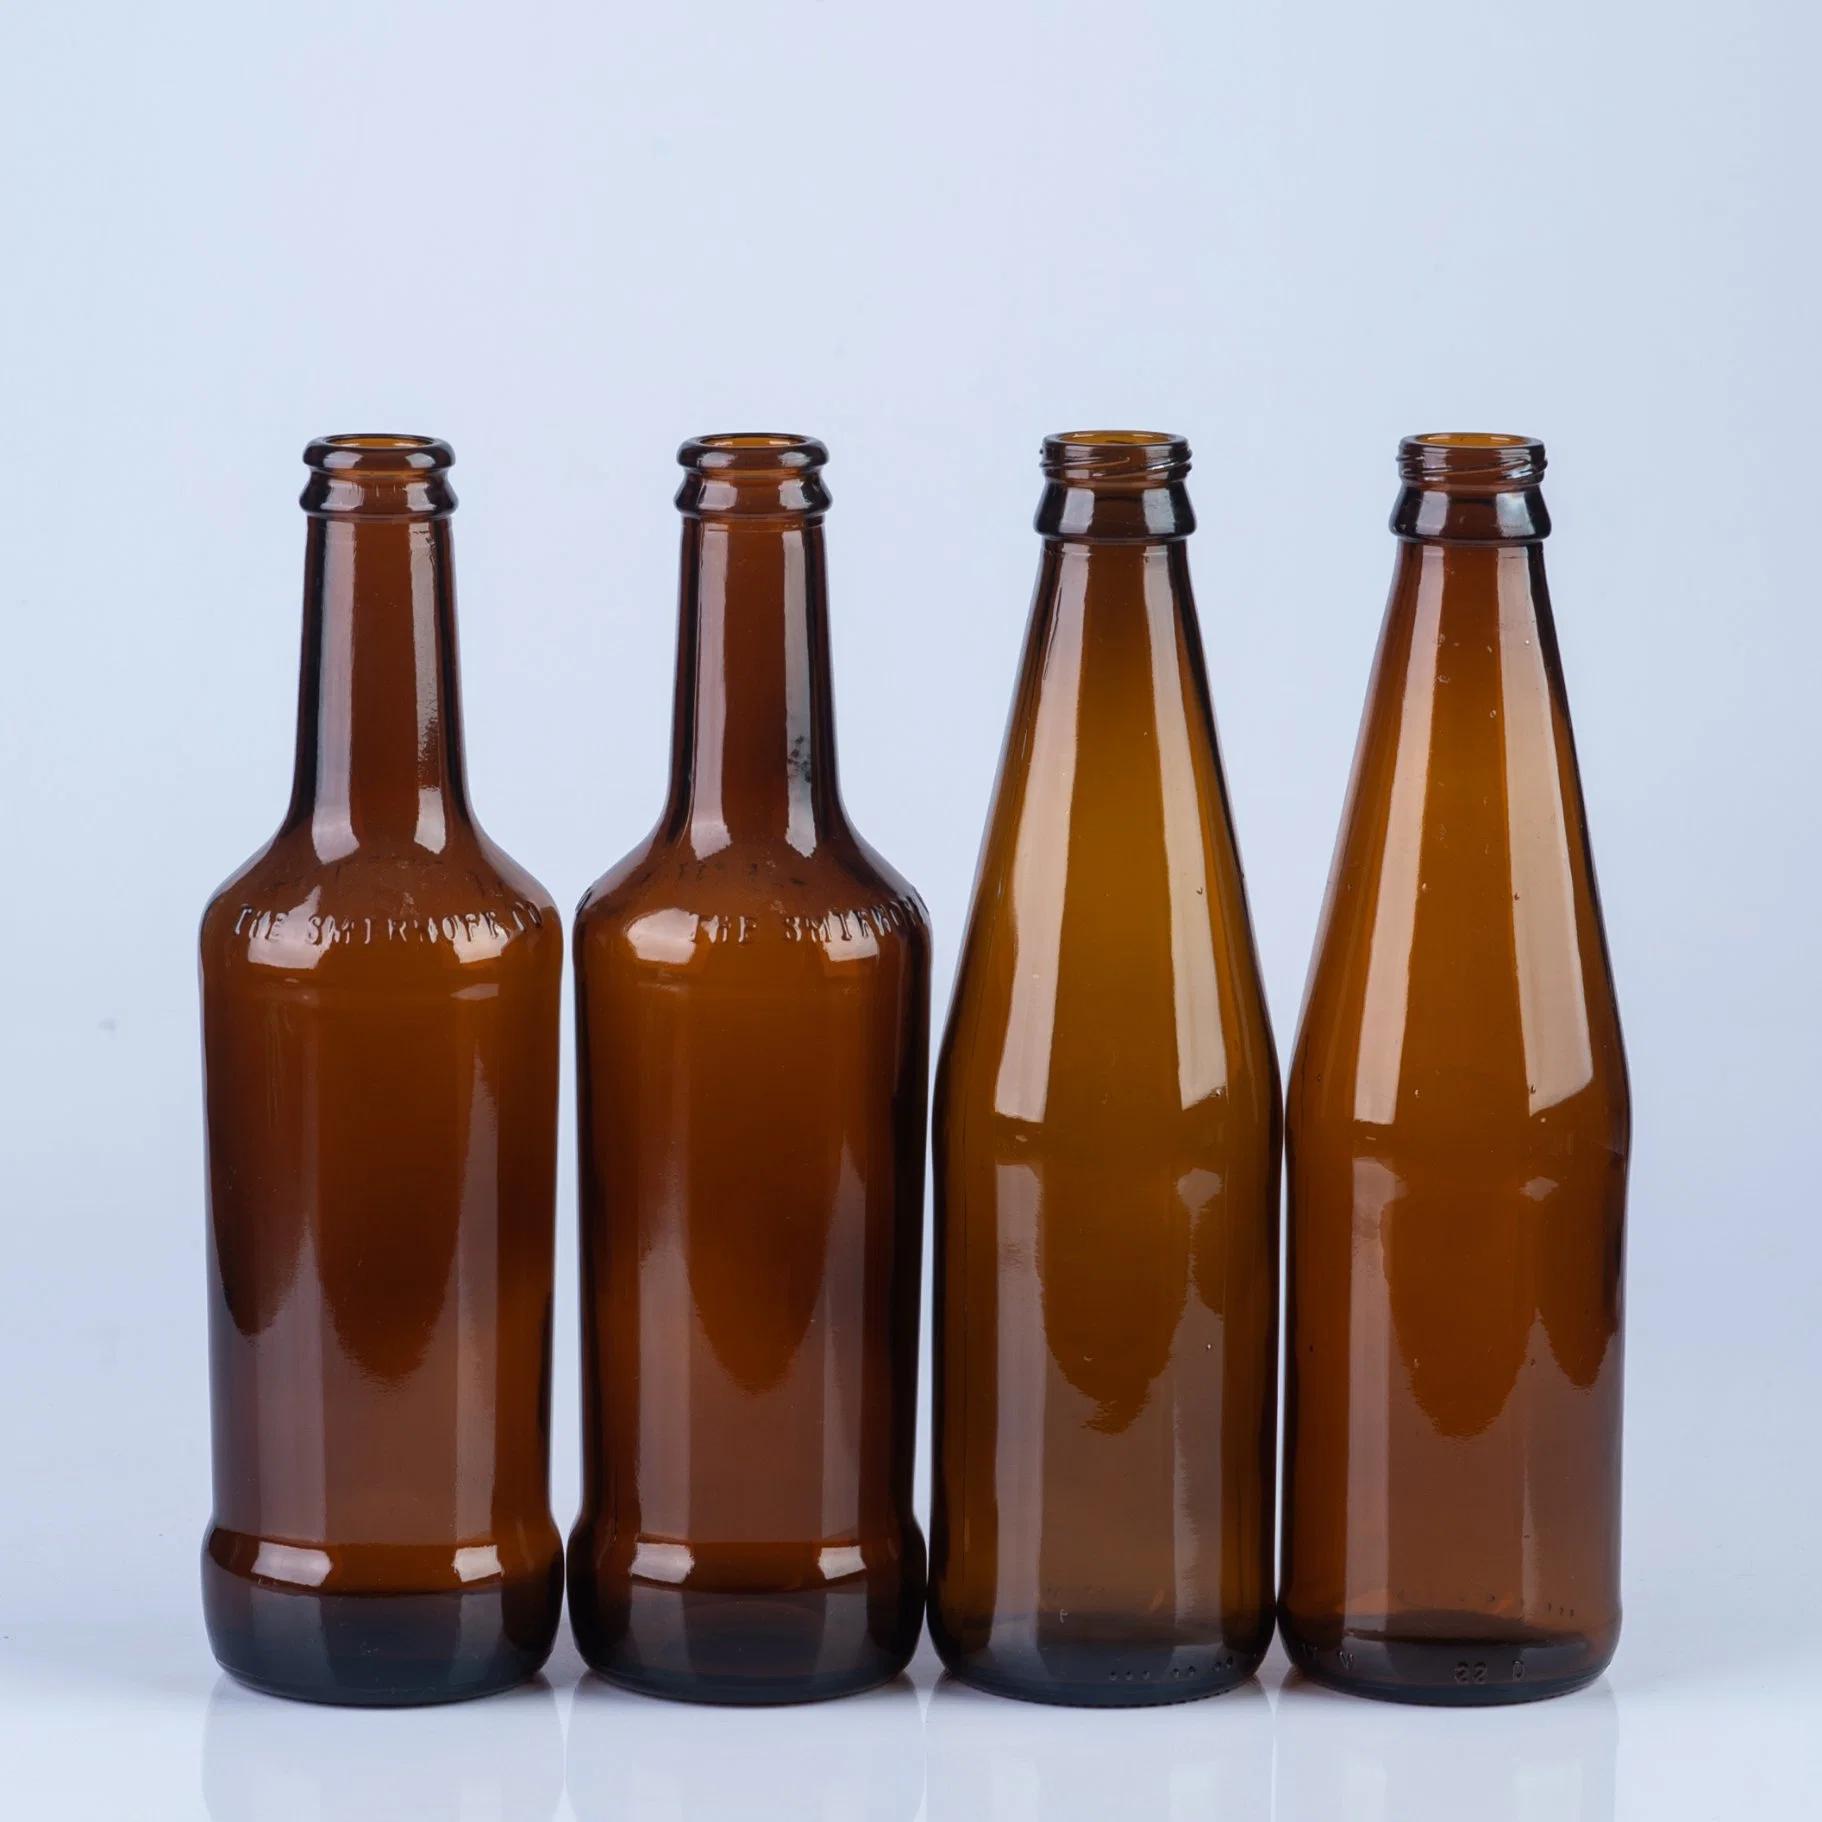 0,33l 330ml Bernstein Bierflasche / Braun Farbe Bierglas Flasche /Grüne Bierflasche